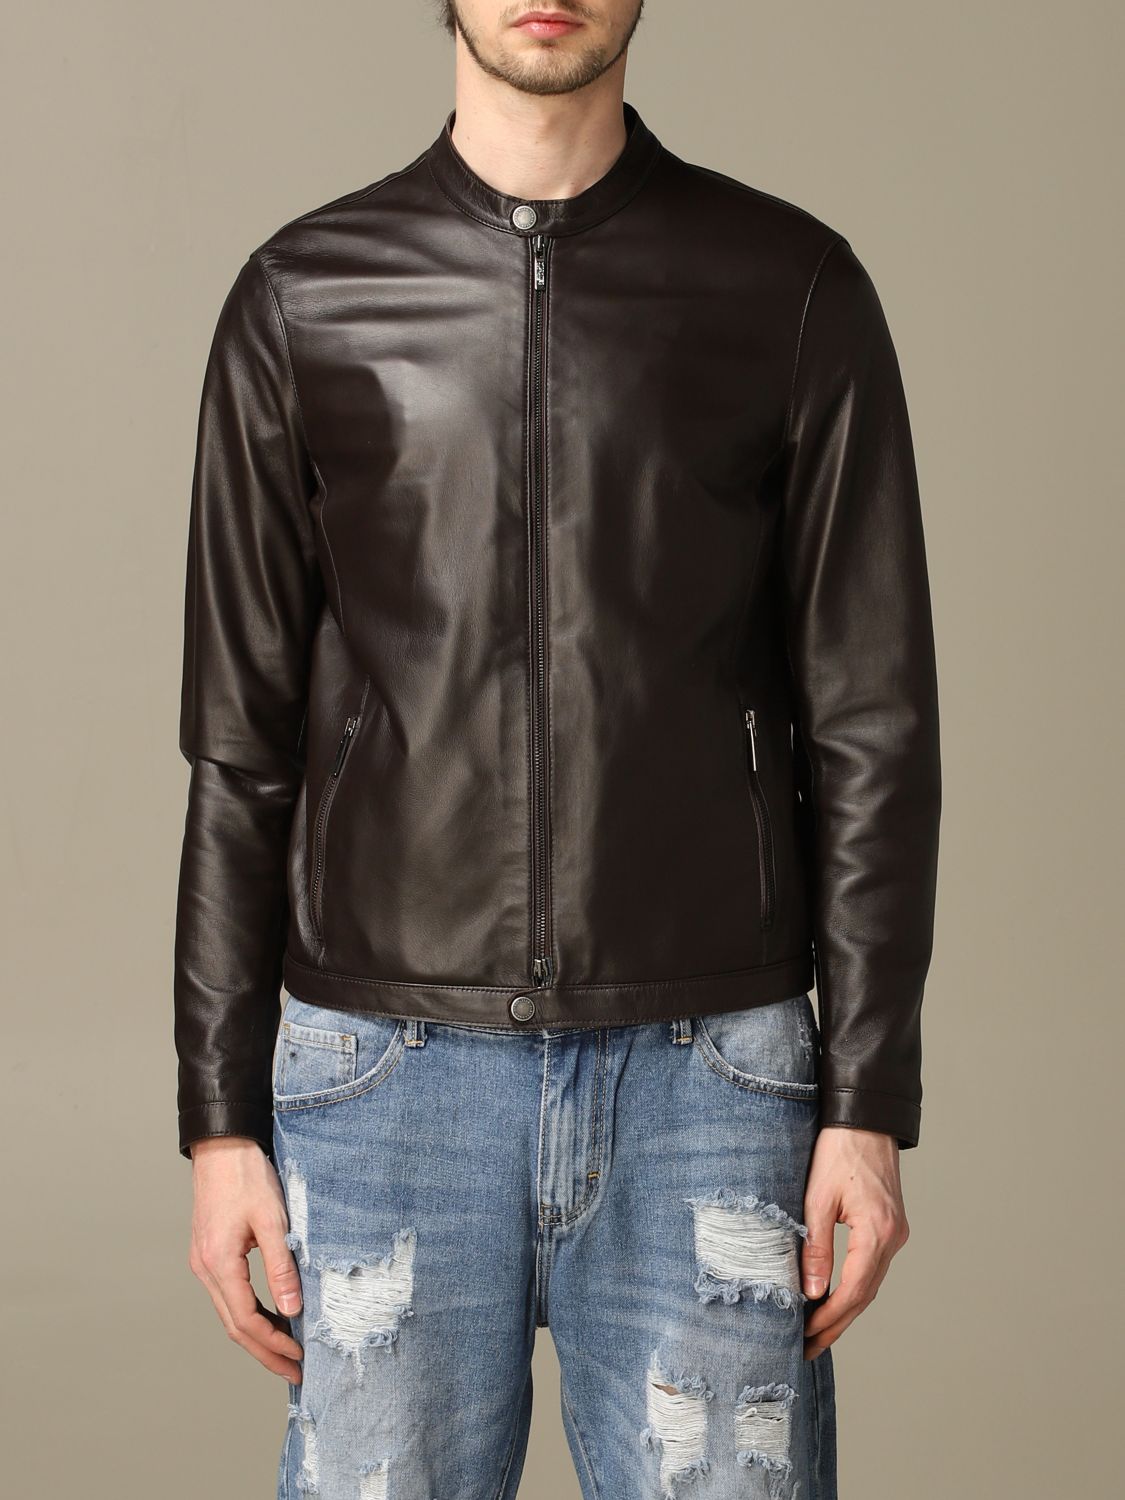 Alessandro Dell'acqua leather jacket